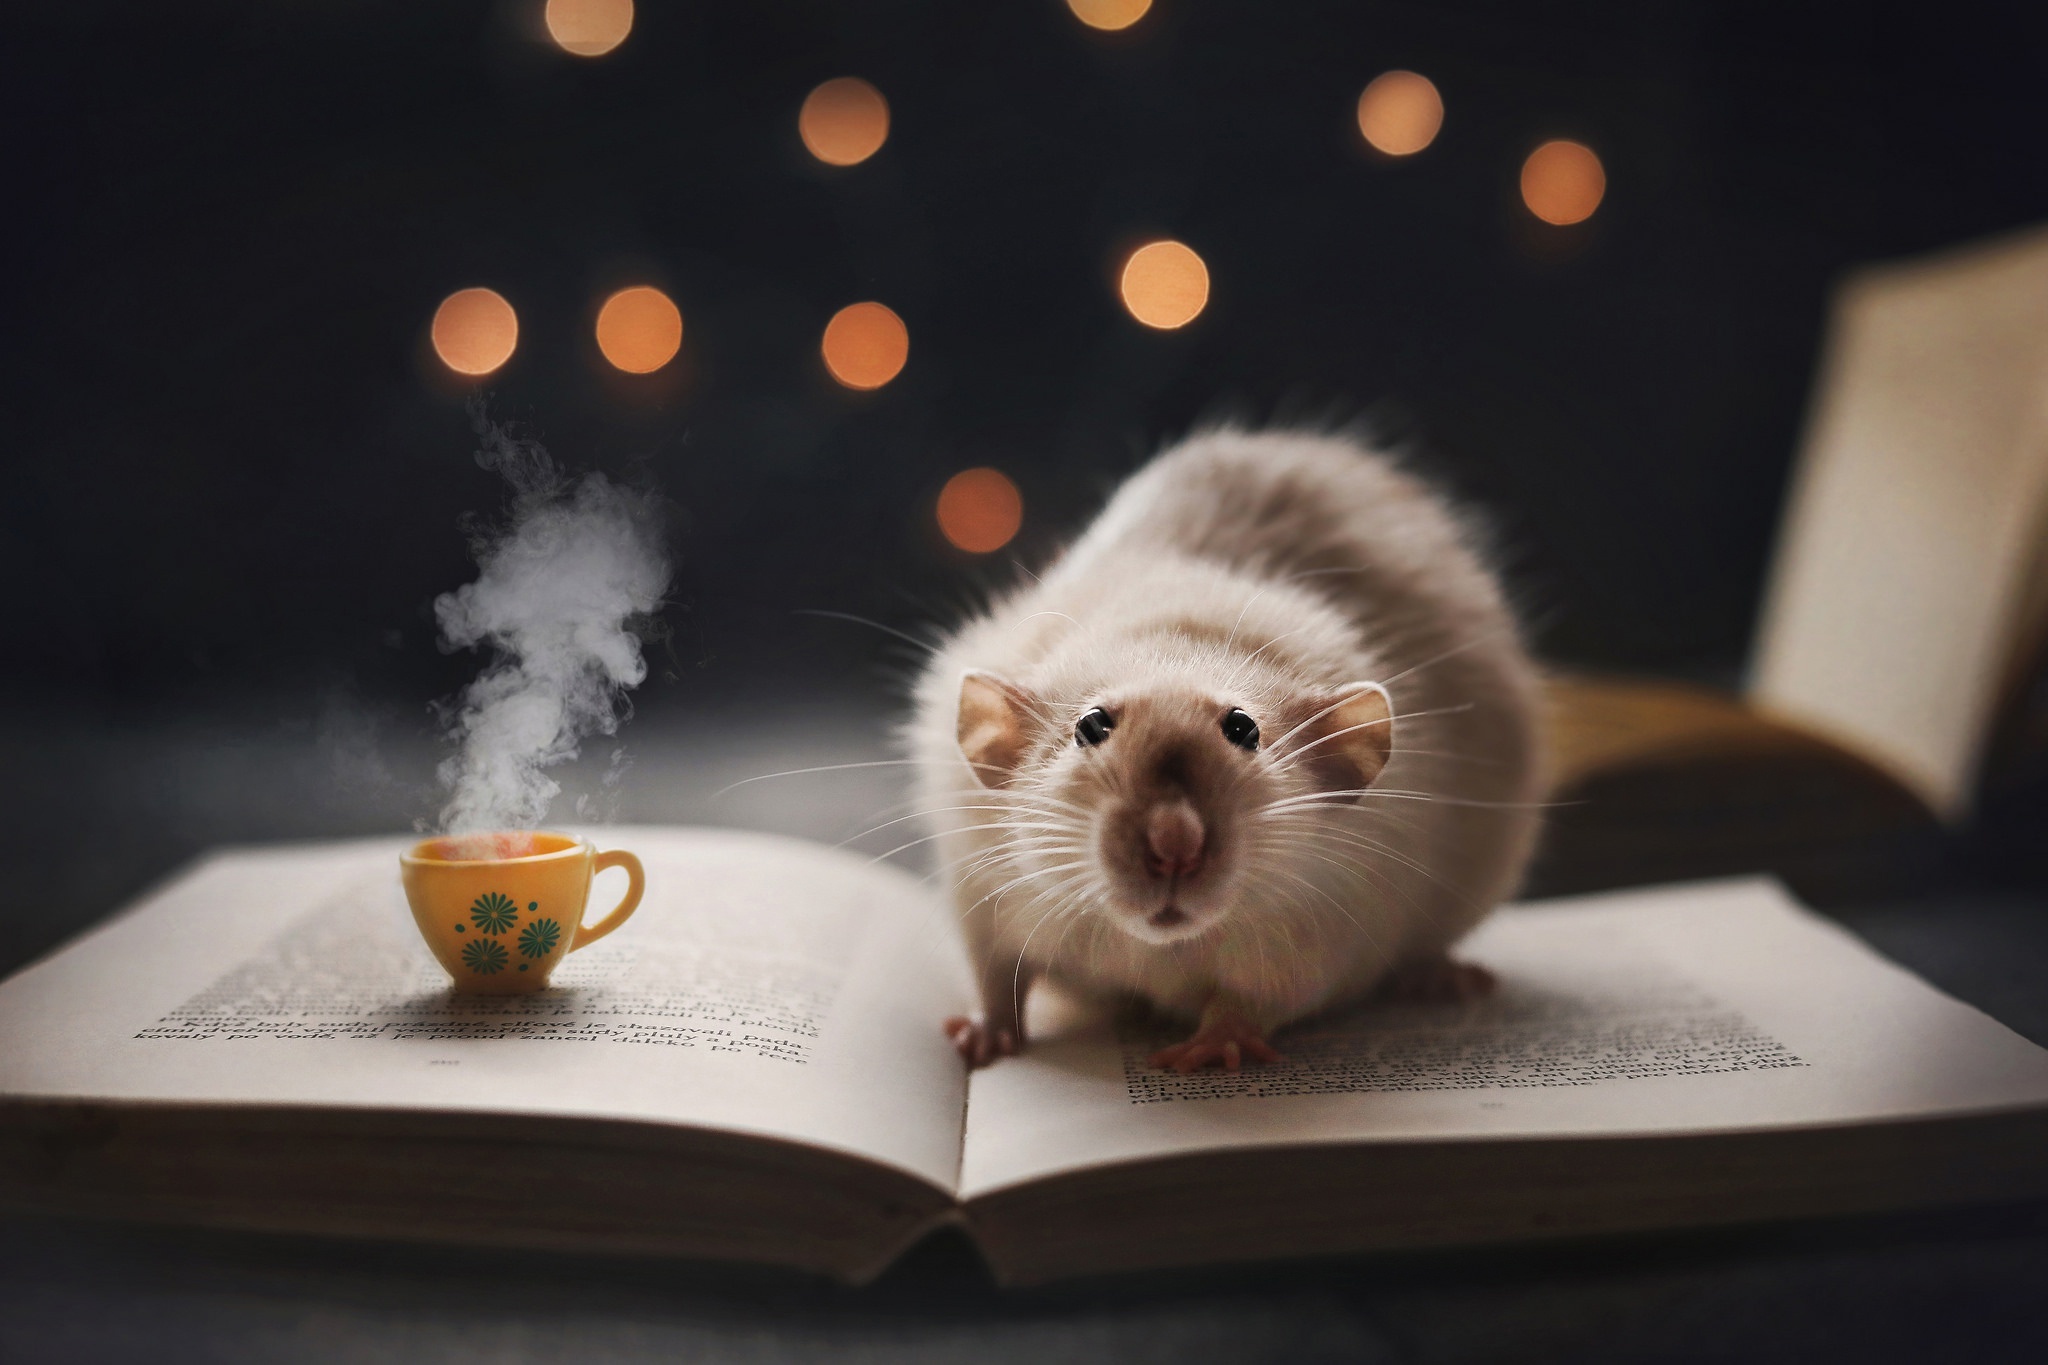 Image: Rat, book, mug, bokeh